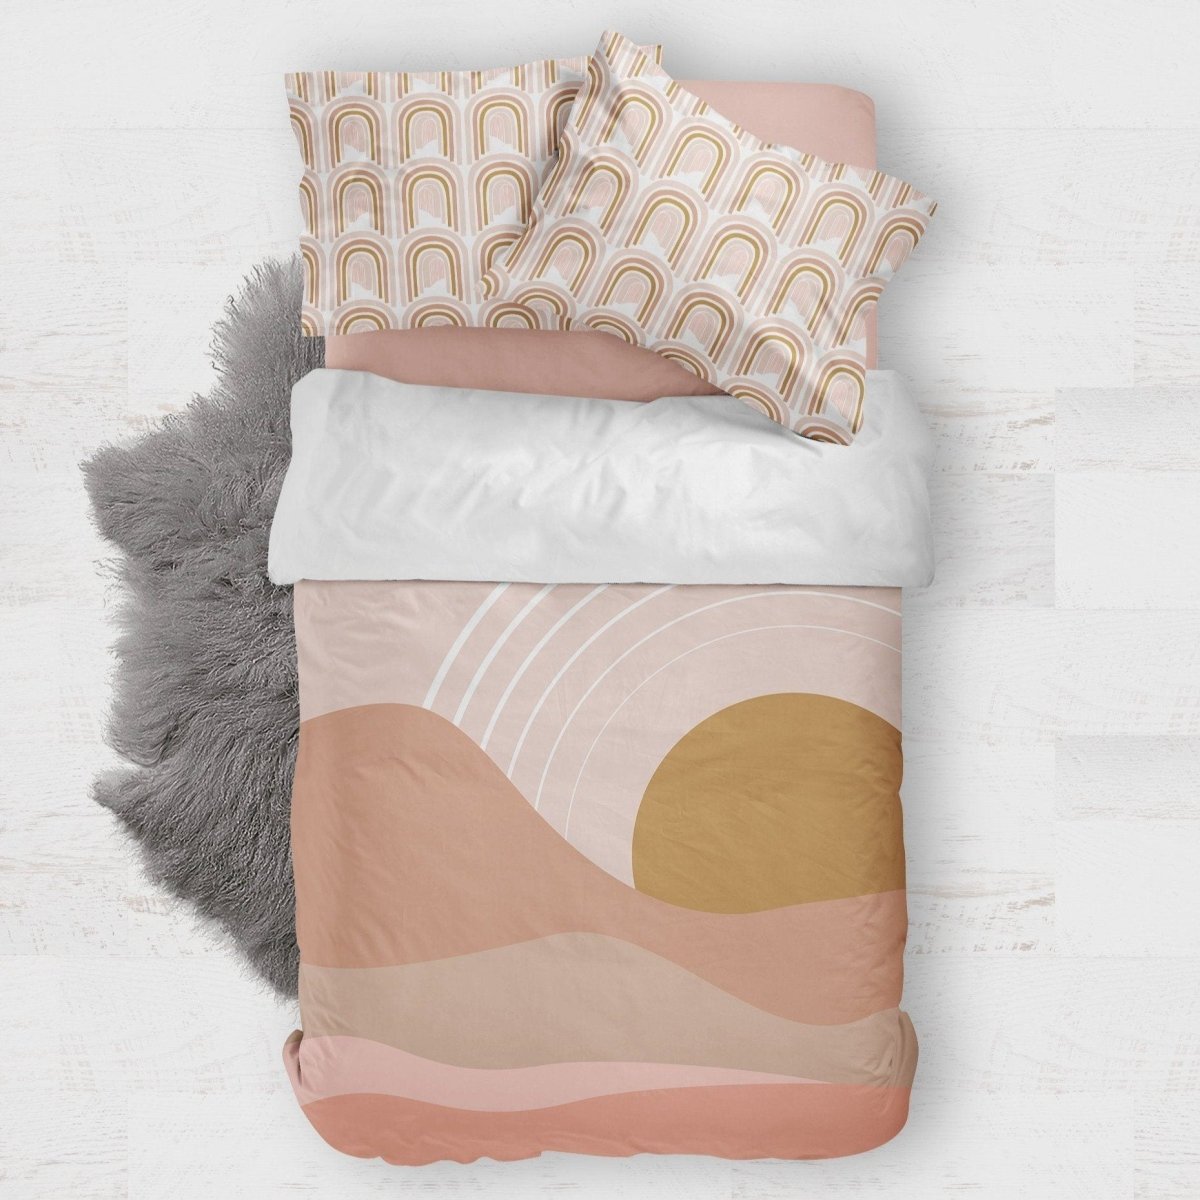 Boho Sunset Kids Bedding Set (Comforter or Duvet Cover) - Boho Sunset, gender_girl, Theme_Boho